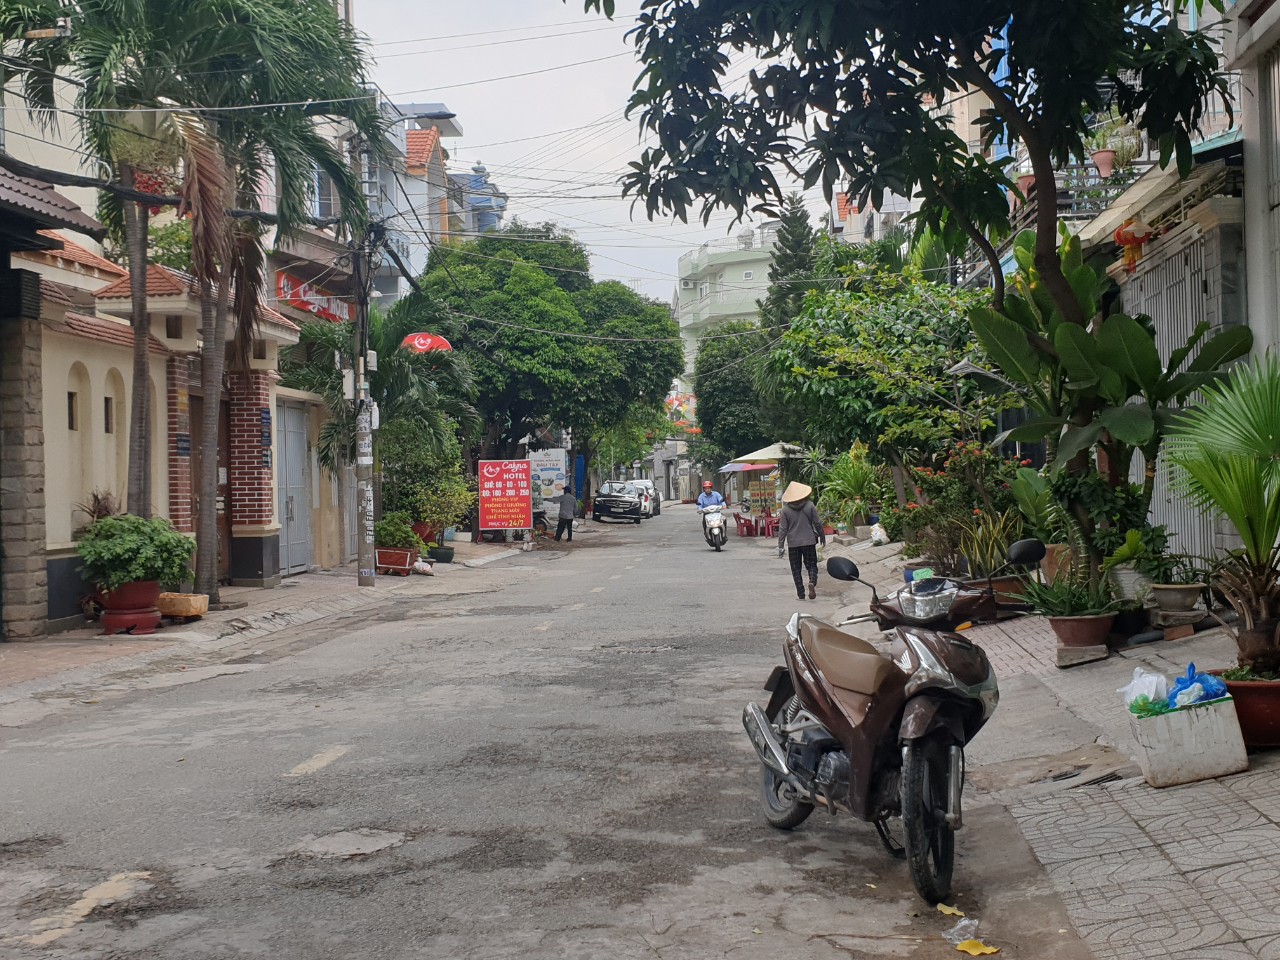 Chính chủ cần bán căn biệt thự đường Nguyễn Oanh, P.17, dt 16x21 nhà 2 mặt đường giá 35 tỷ